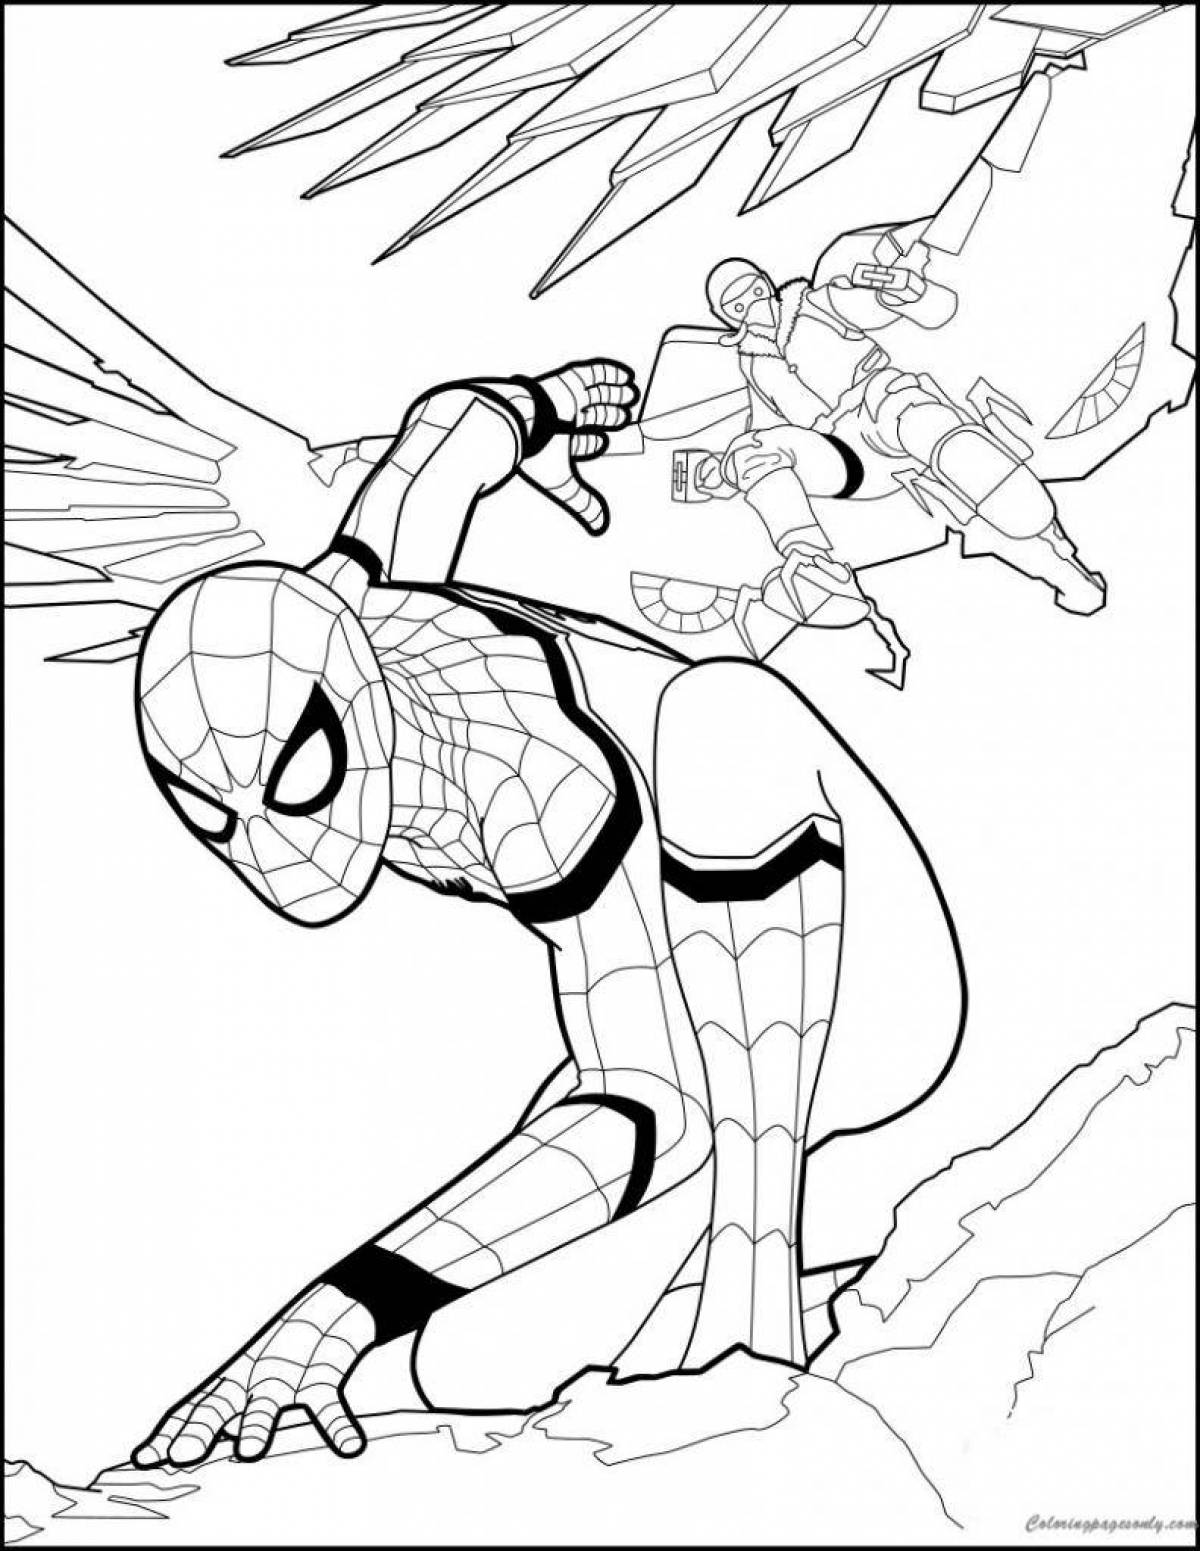 Impressive spider-man no way home coloring book